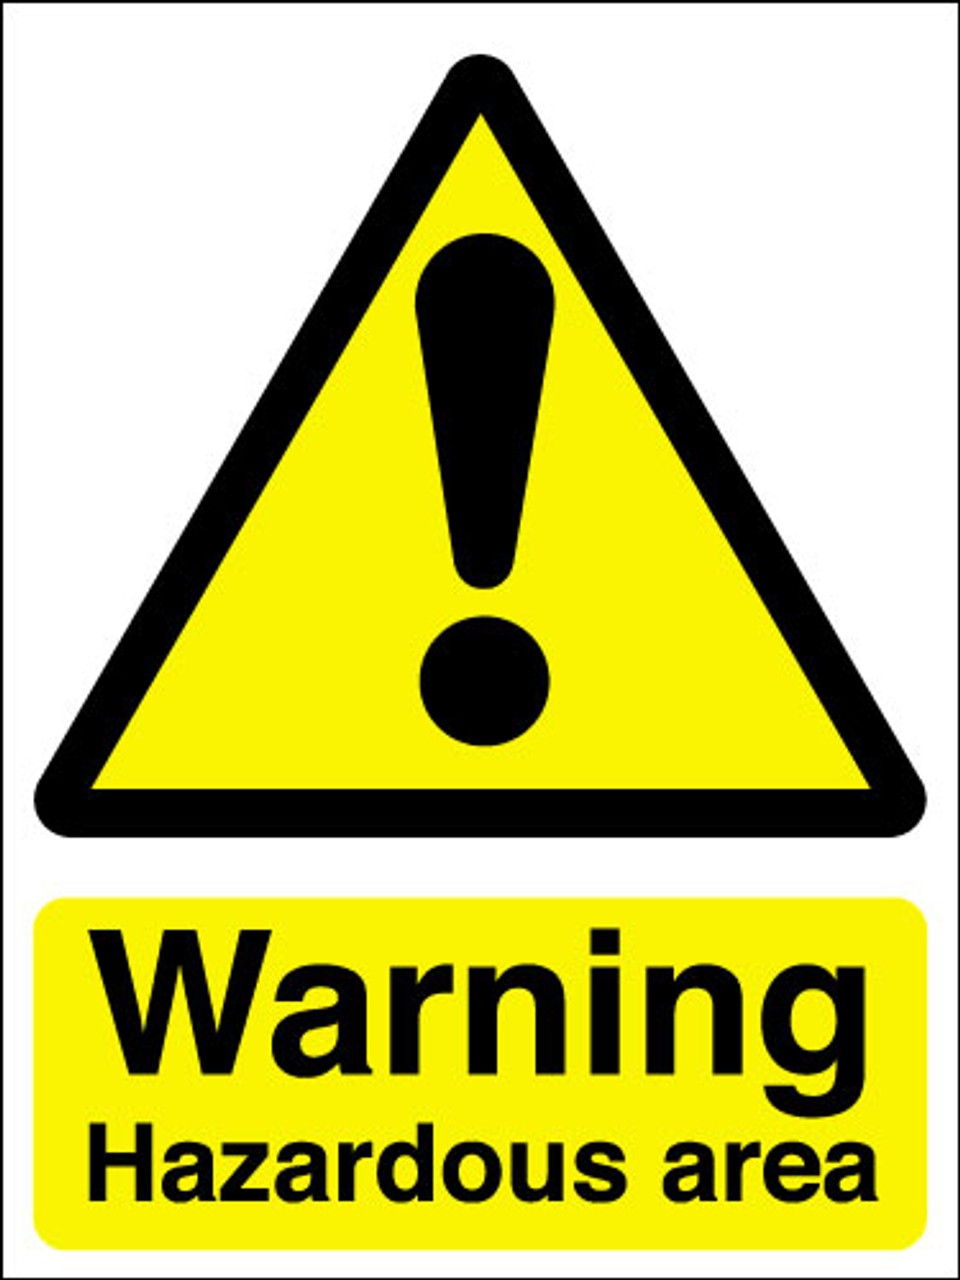 Warning hazardous area sign